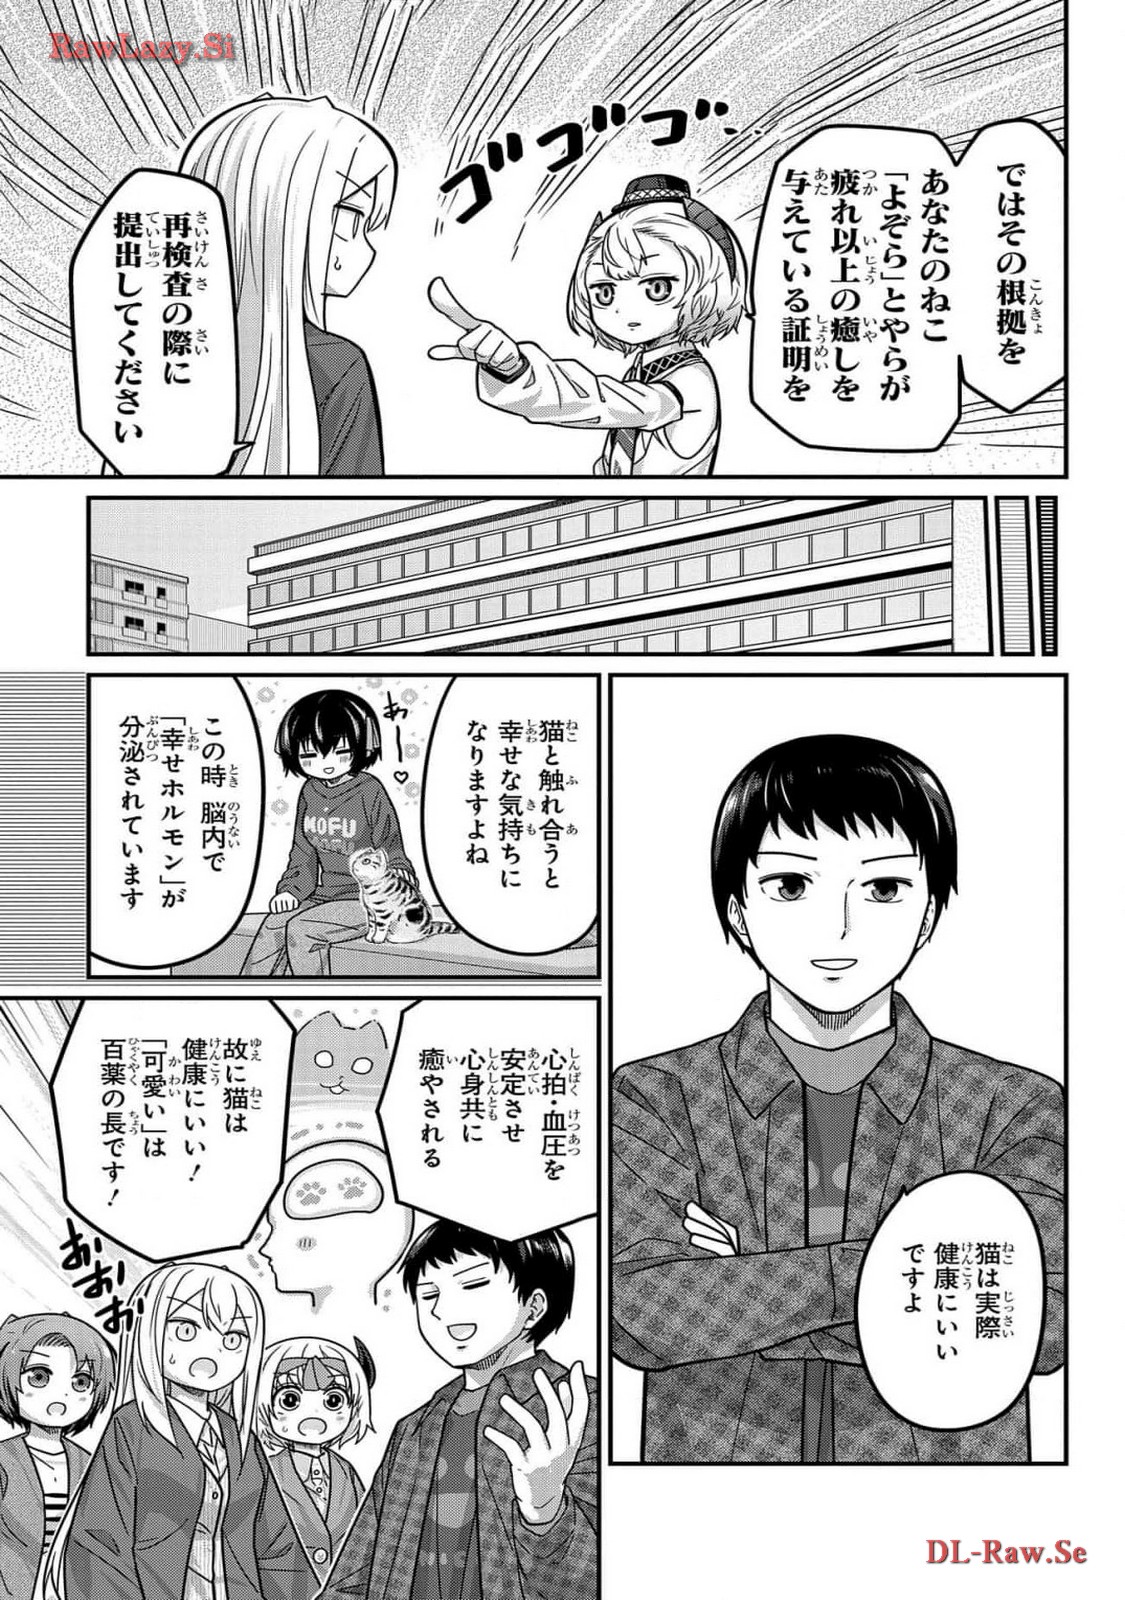 Kawaisugi Crisis - Chapter 107 - Page 11